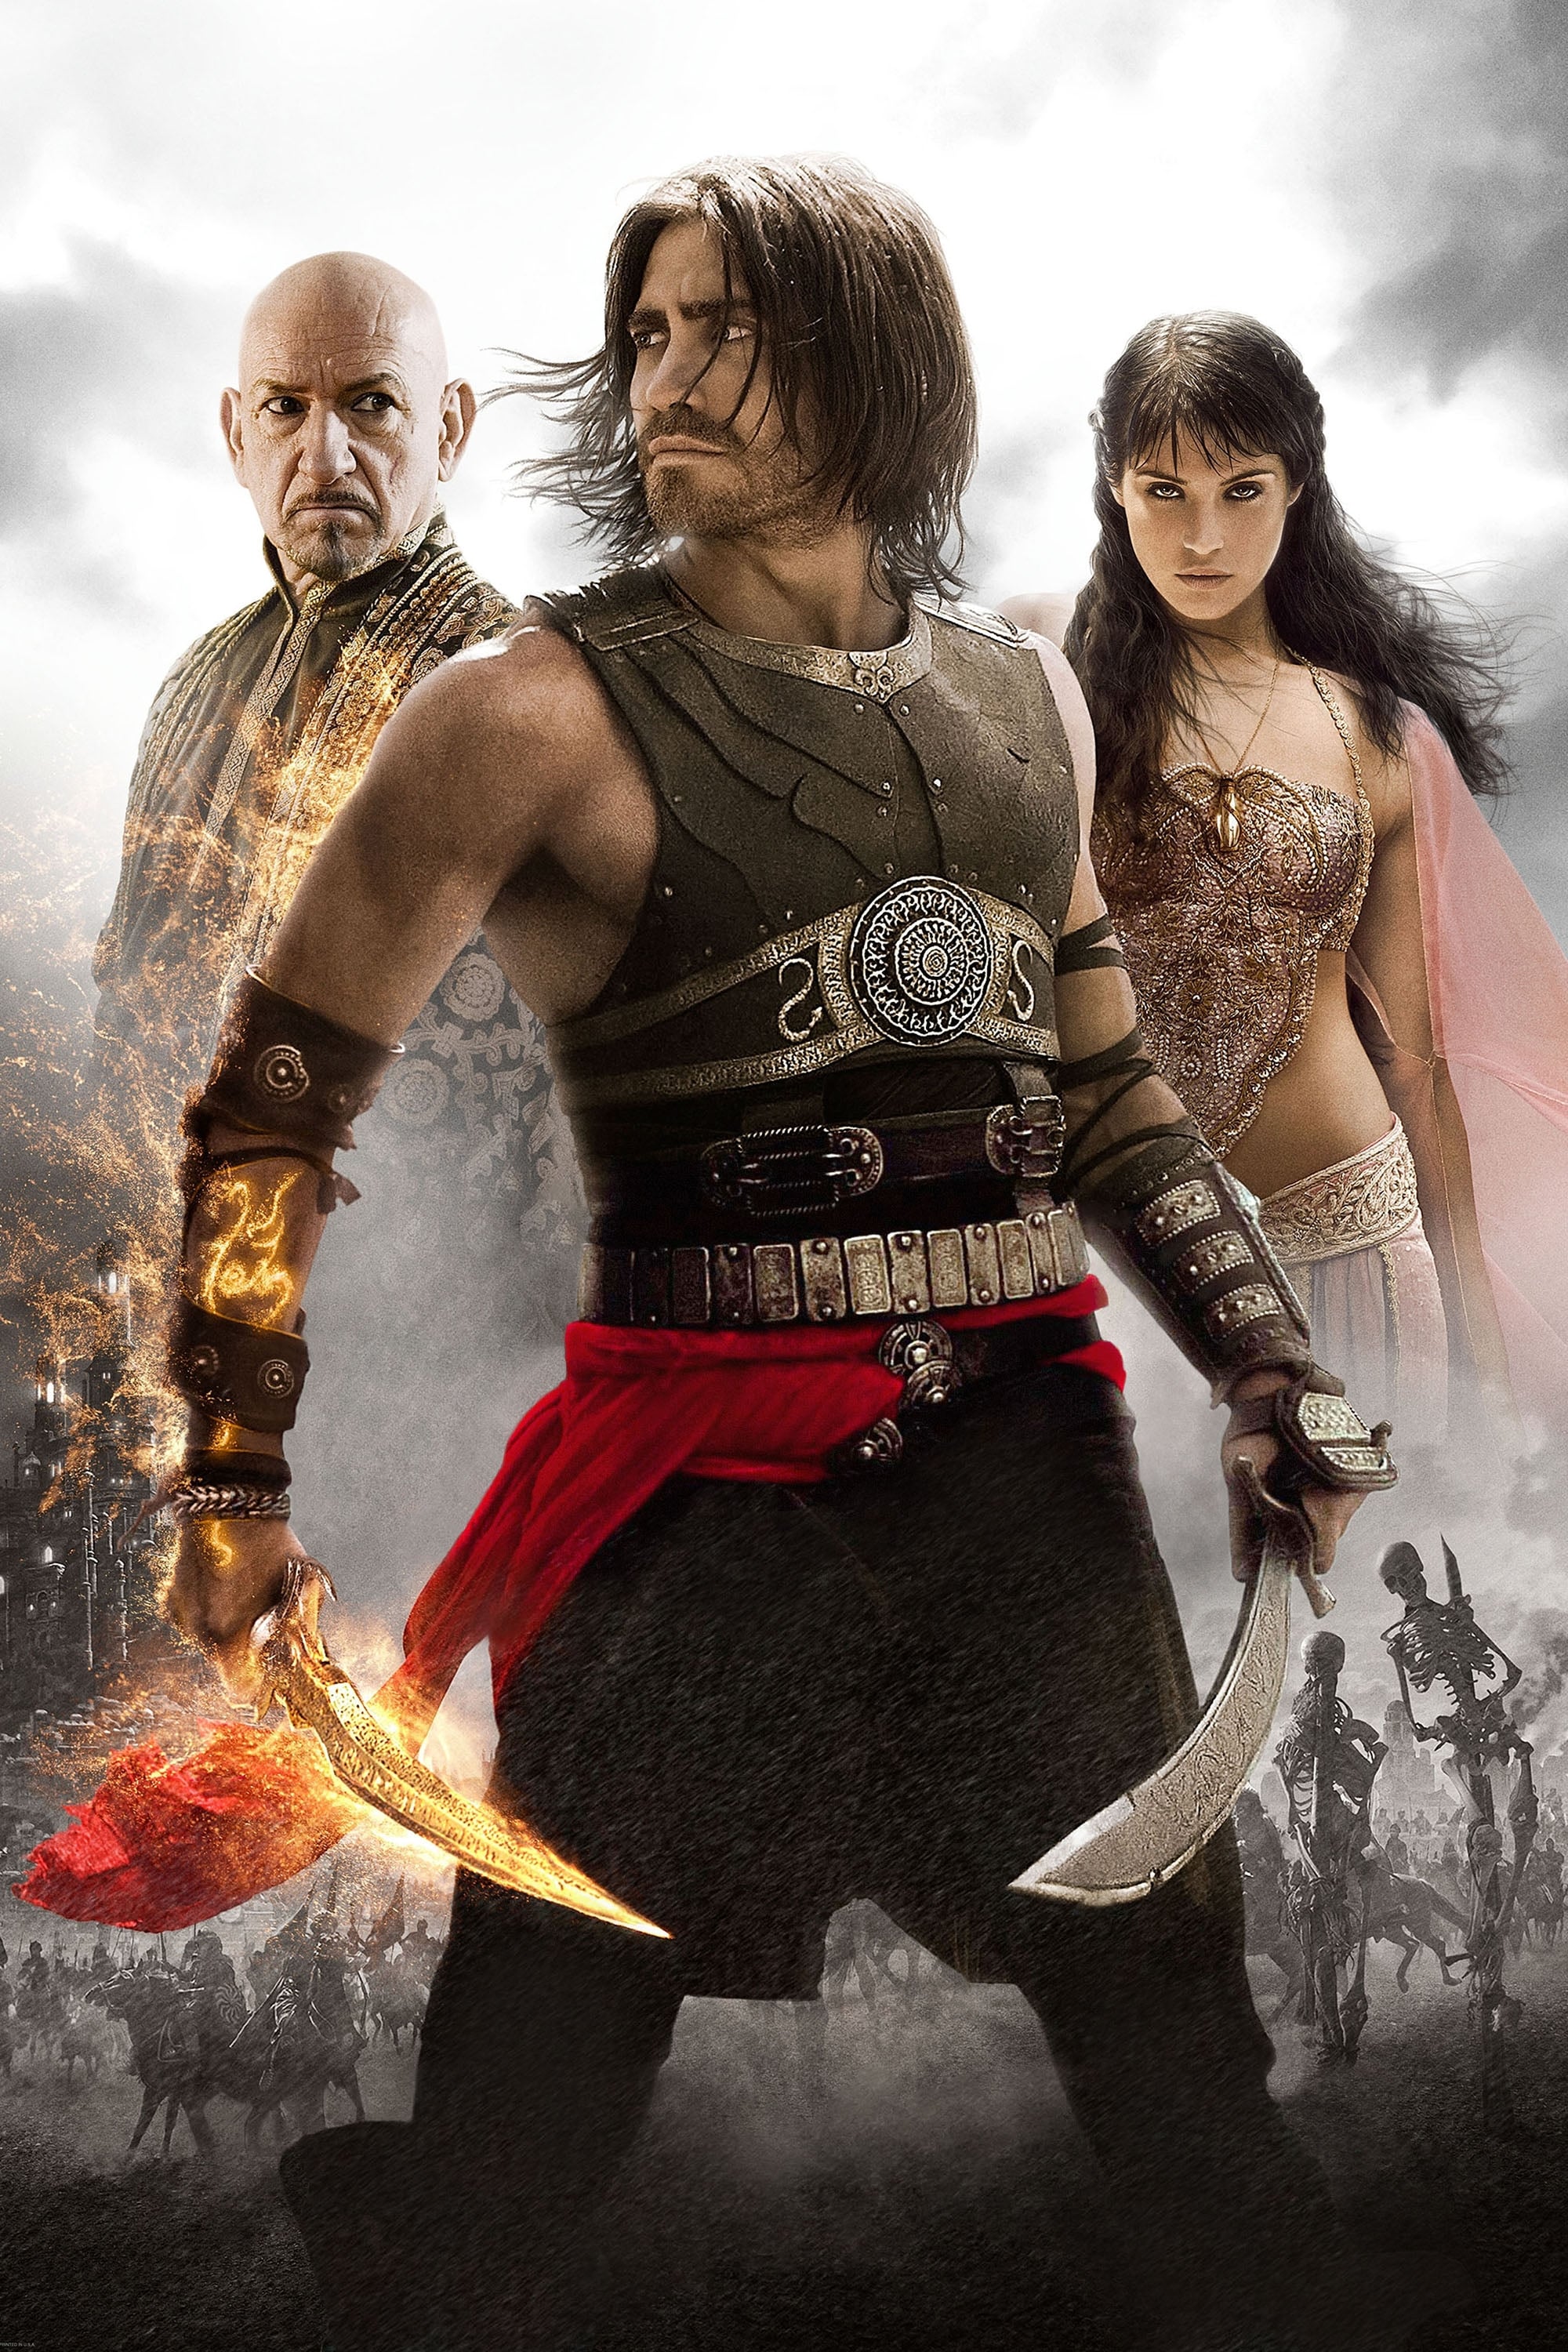 Stiahni si UHD Filmy Princ z Persie: Písky času / Prince of Persia: The Sands of Time (2010)(CZ/EN)[BD-R][2160p] = CSFD 70%